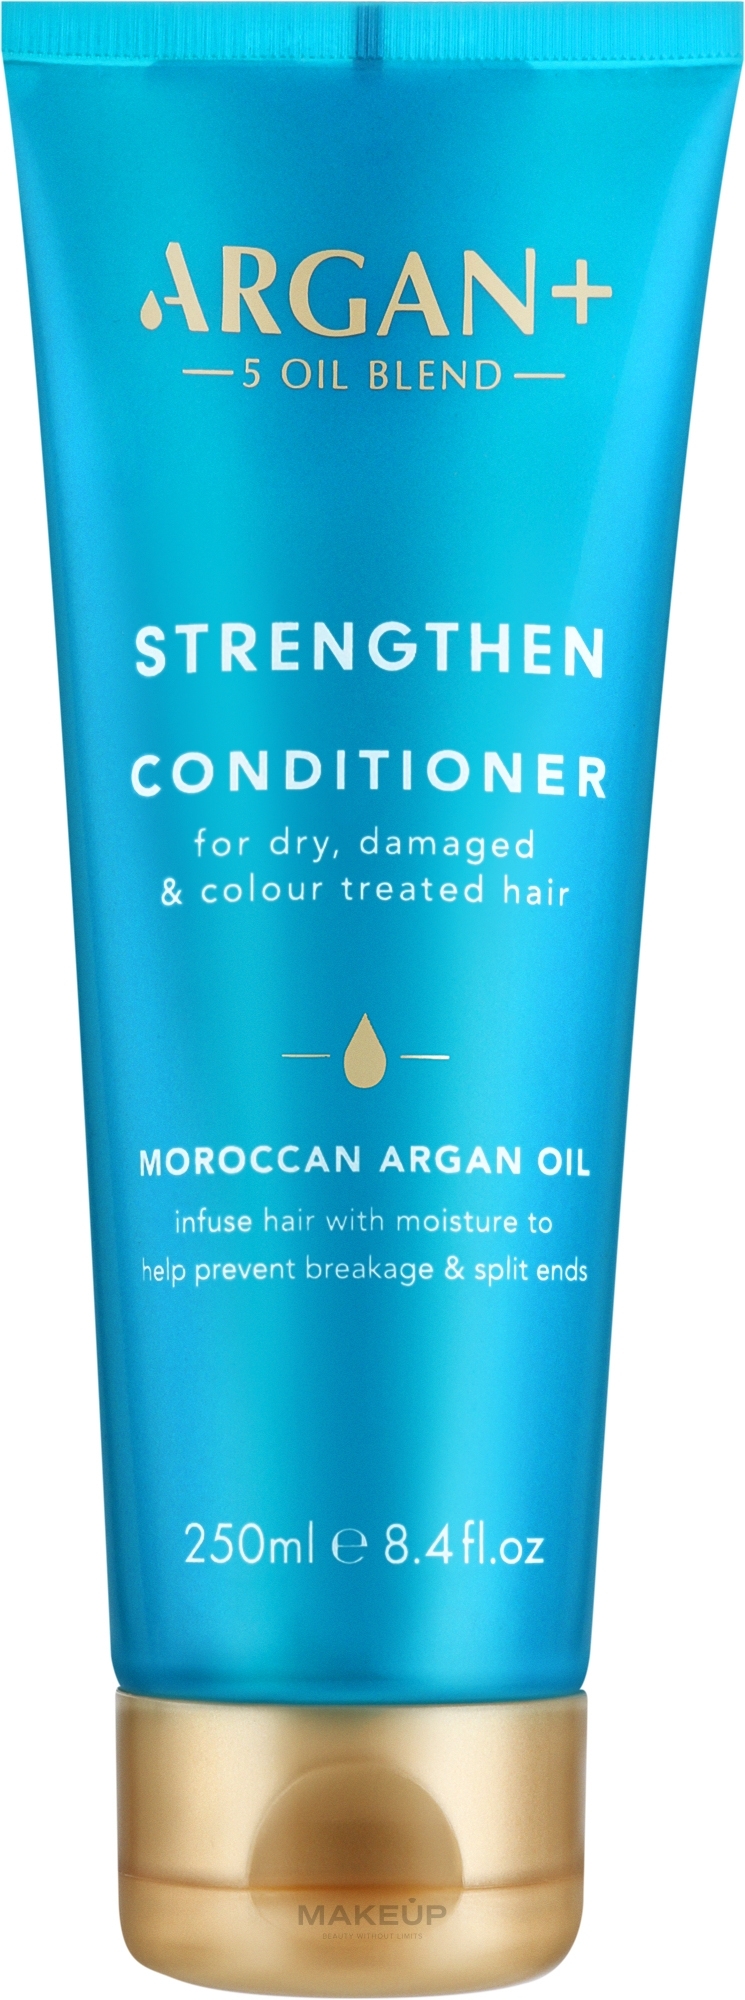 Odżywka do włosów suchych, zniszczonych i farbowanych - Argan+ Strengthen Conditioner Morocco Argan Oil — Zdjęcie 250 ml